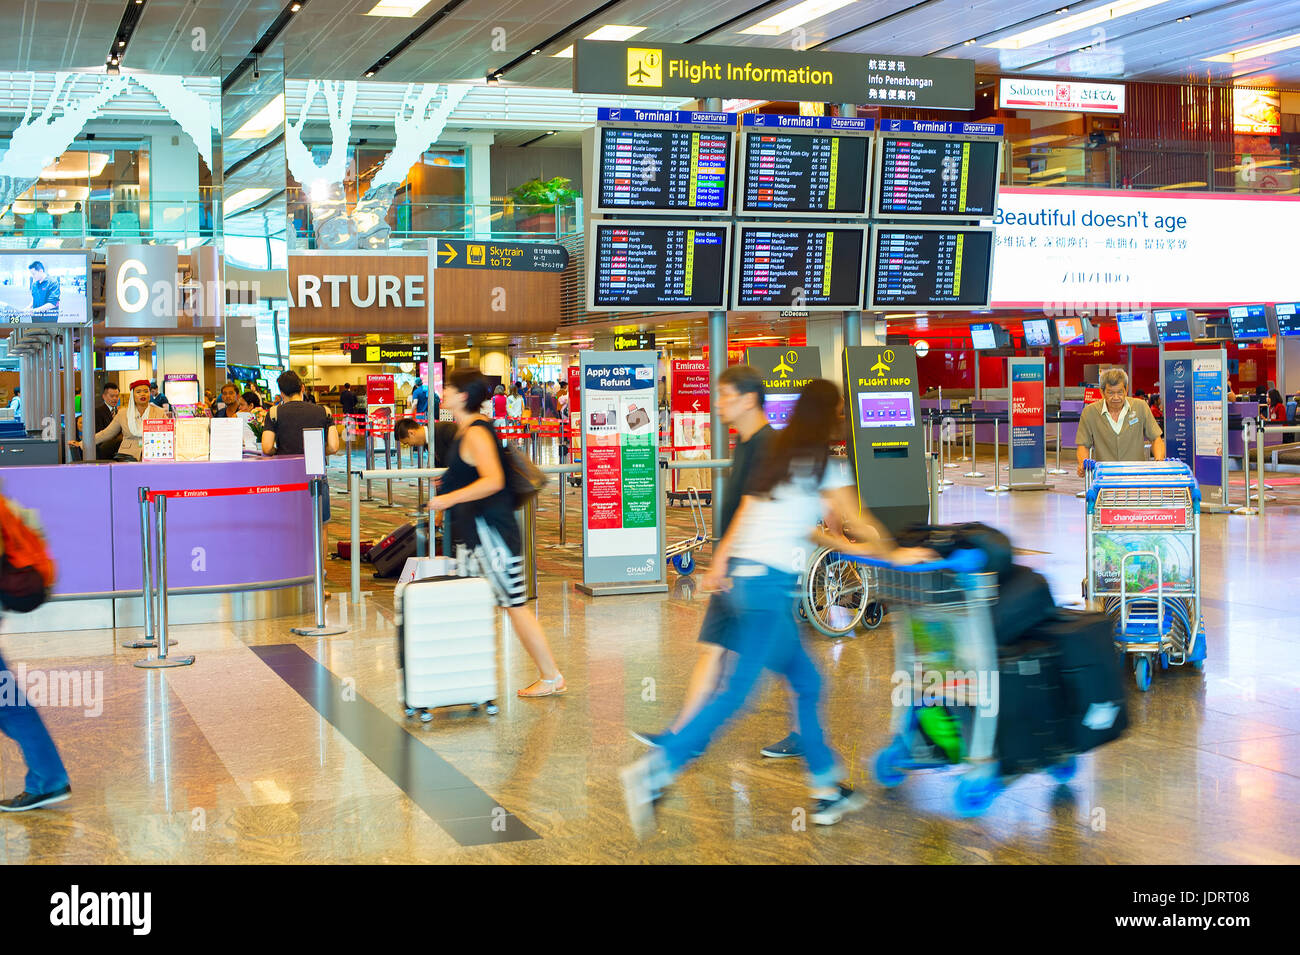 Singapour - Le 13 janvier 2017 : Les passagers à la hâte près de la commission d'information, à l'aéroport de Changi. L'aéroport de Changi est au service de plus de 100 compagnies aériennes s'élève Banque D'Images